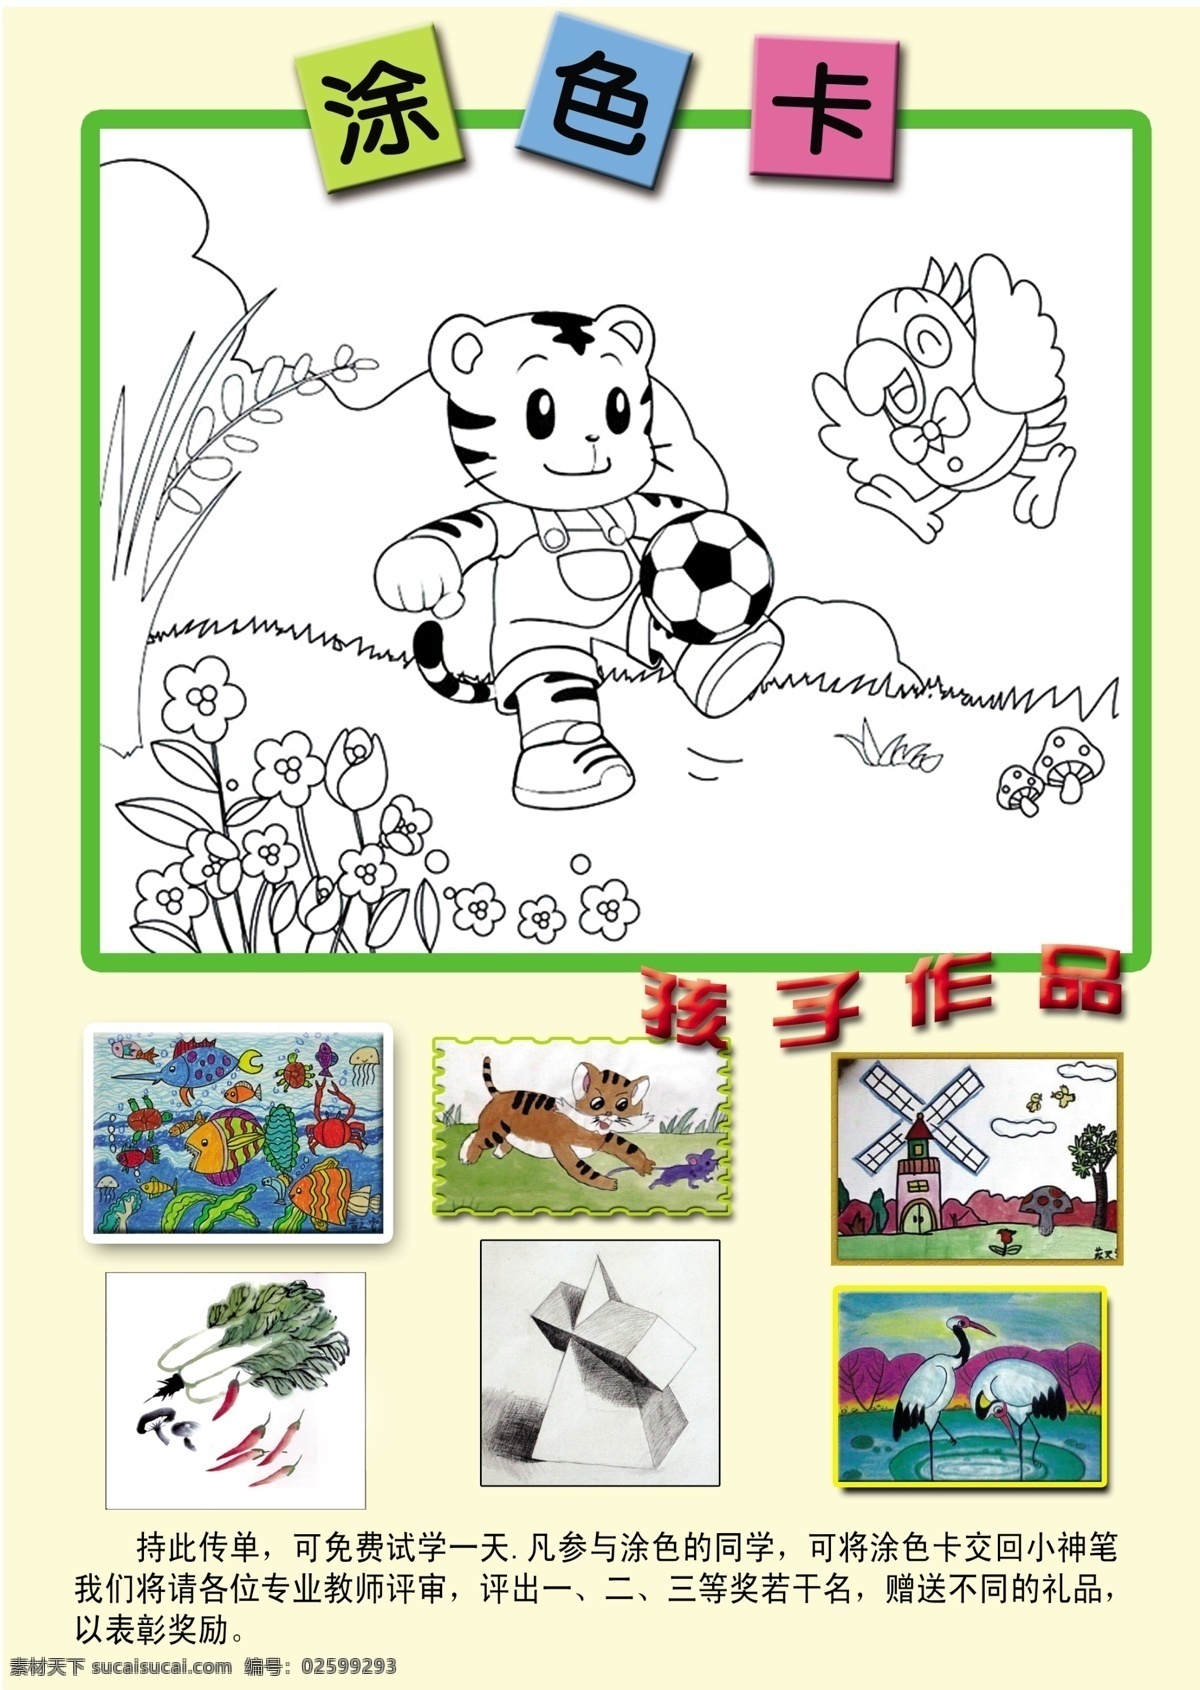 少儿 绘画 宣传单 各色铅笔 漂亮的小雏菊 儿童涂色图片 少儿作品 dm宣传单 广告设计模板 源文件